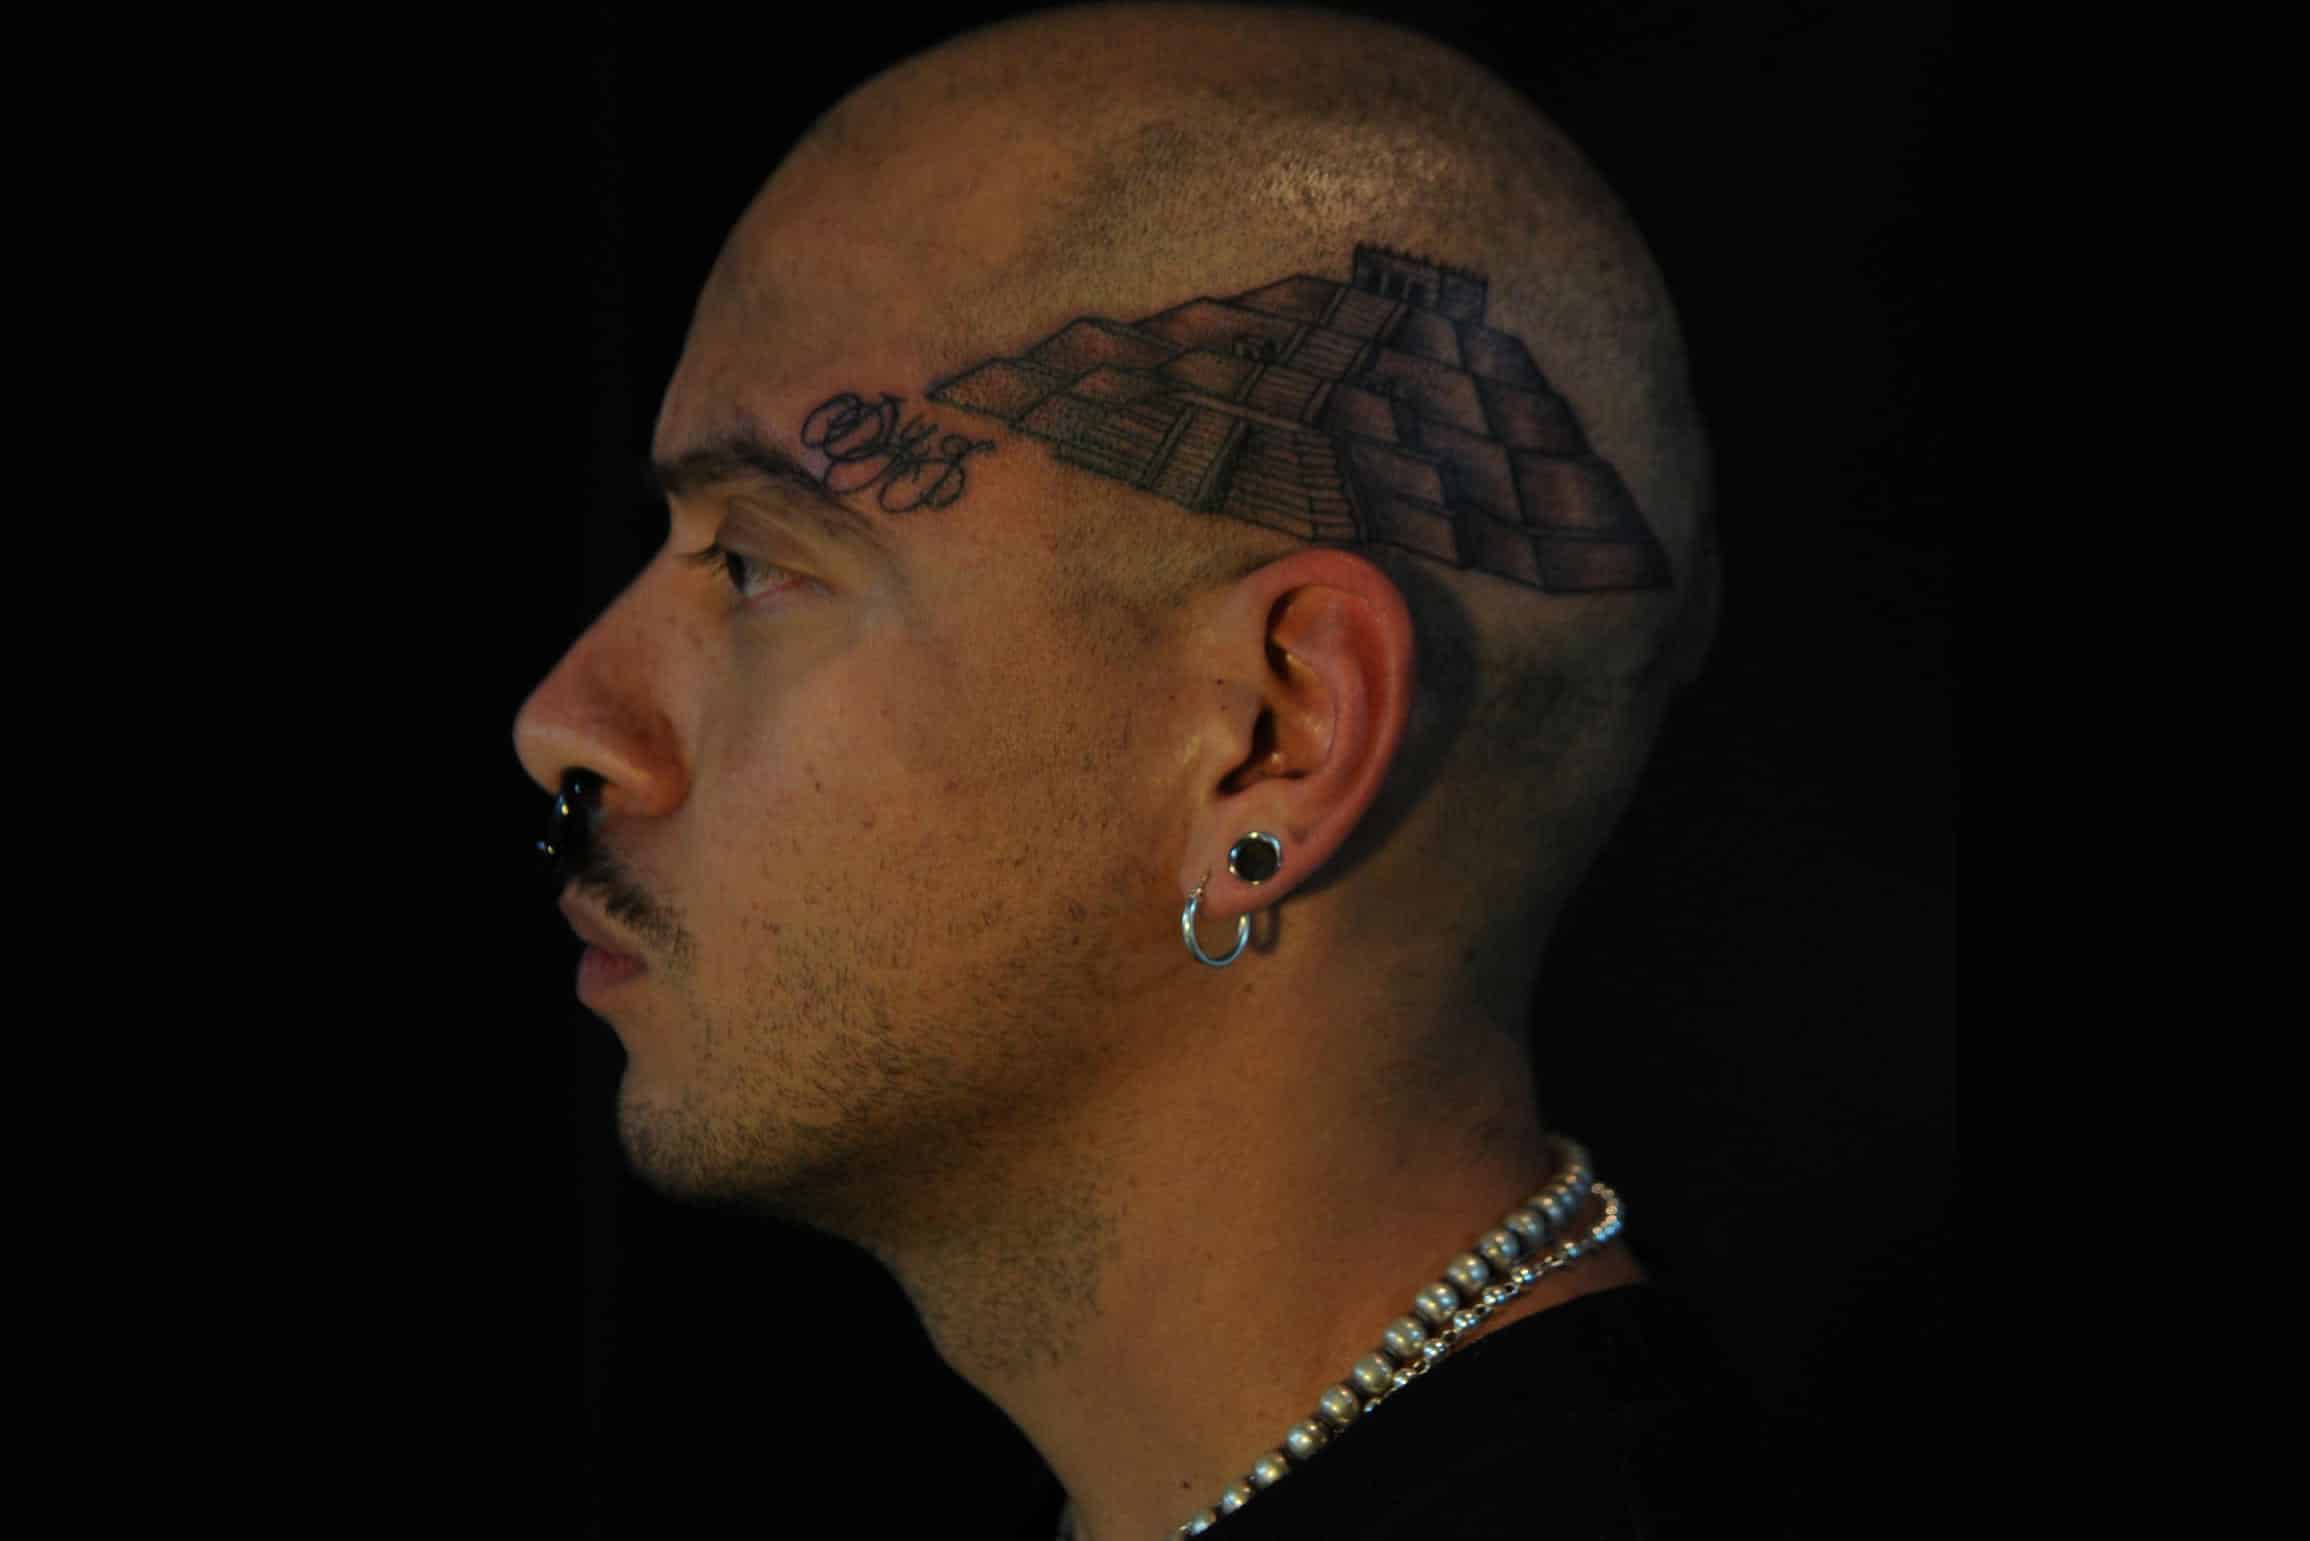 Tattoo Shops: Christos Tejada Discusses Parlors vs. Social Media